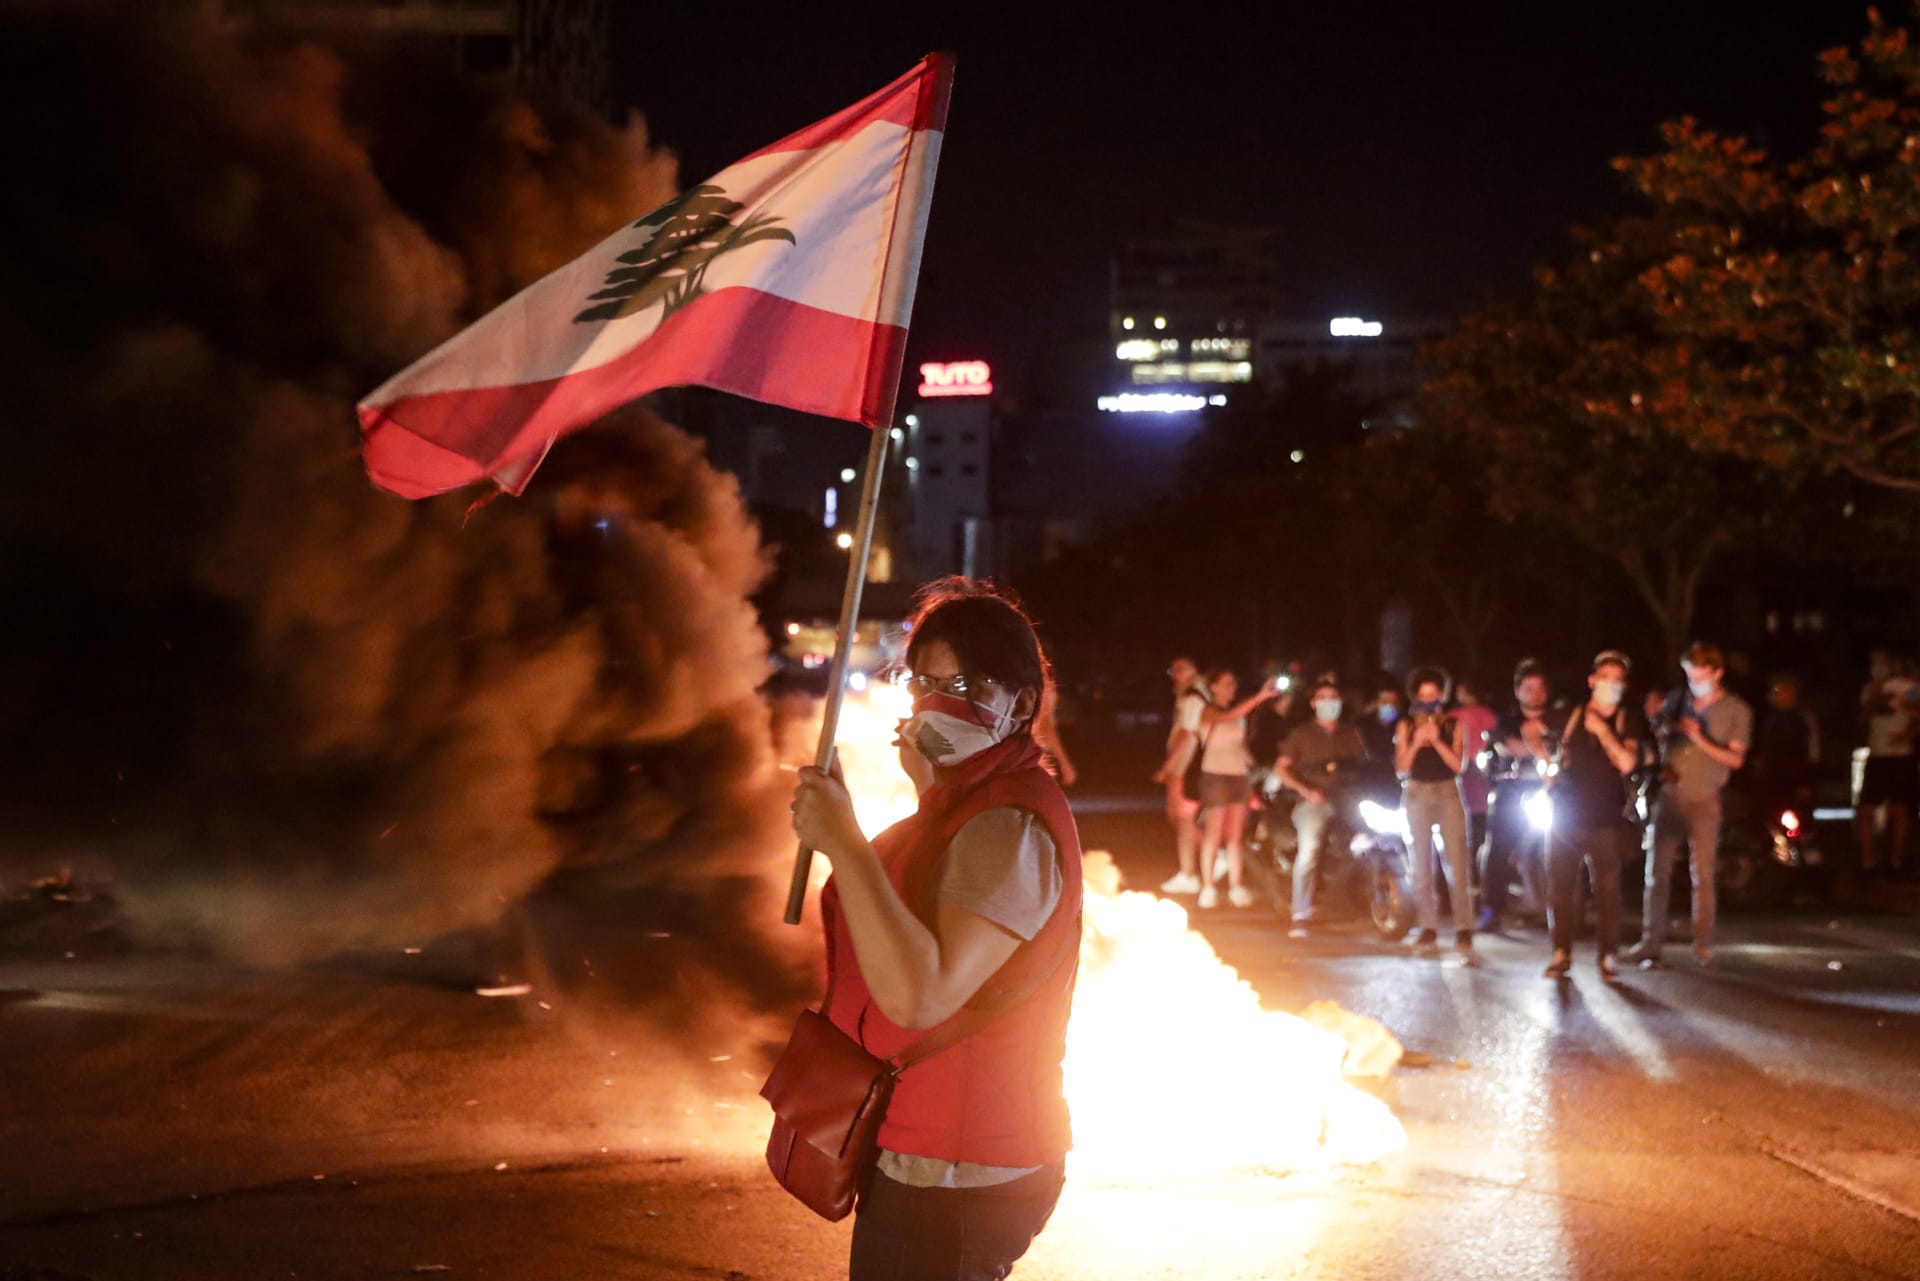 احتجاجات واسعة في بيروت ومدن لبنانية أخرى بعد انهيار سعر صرف الليرة